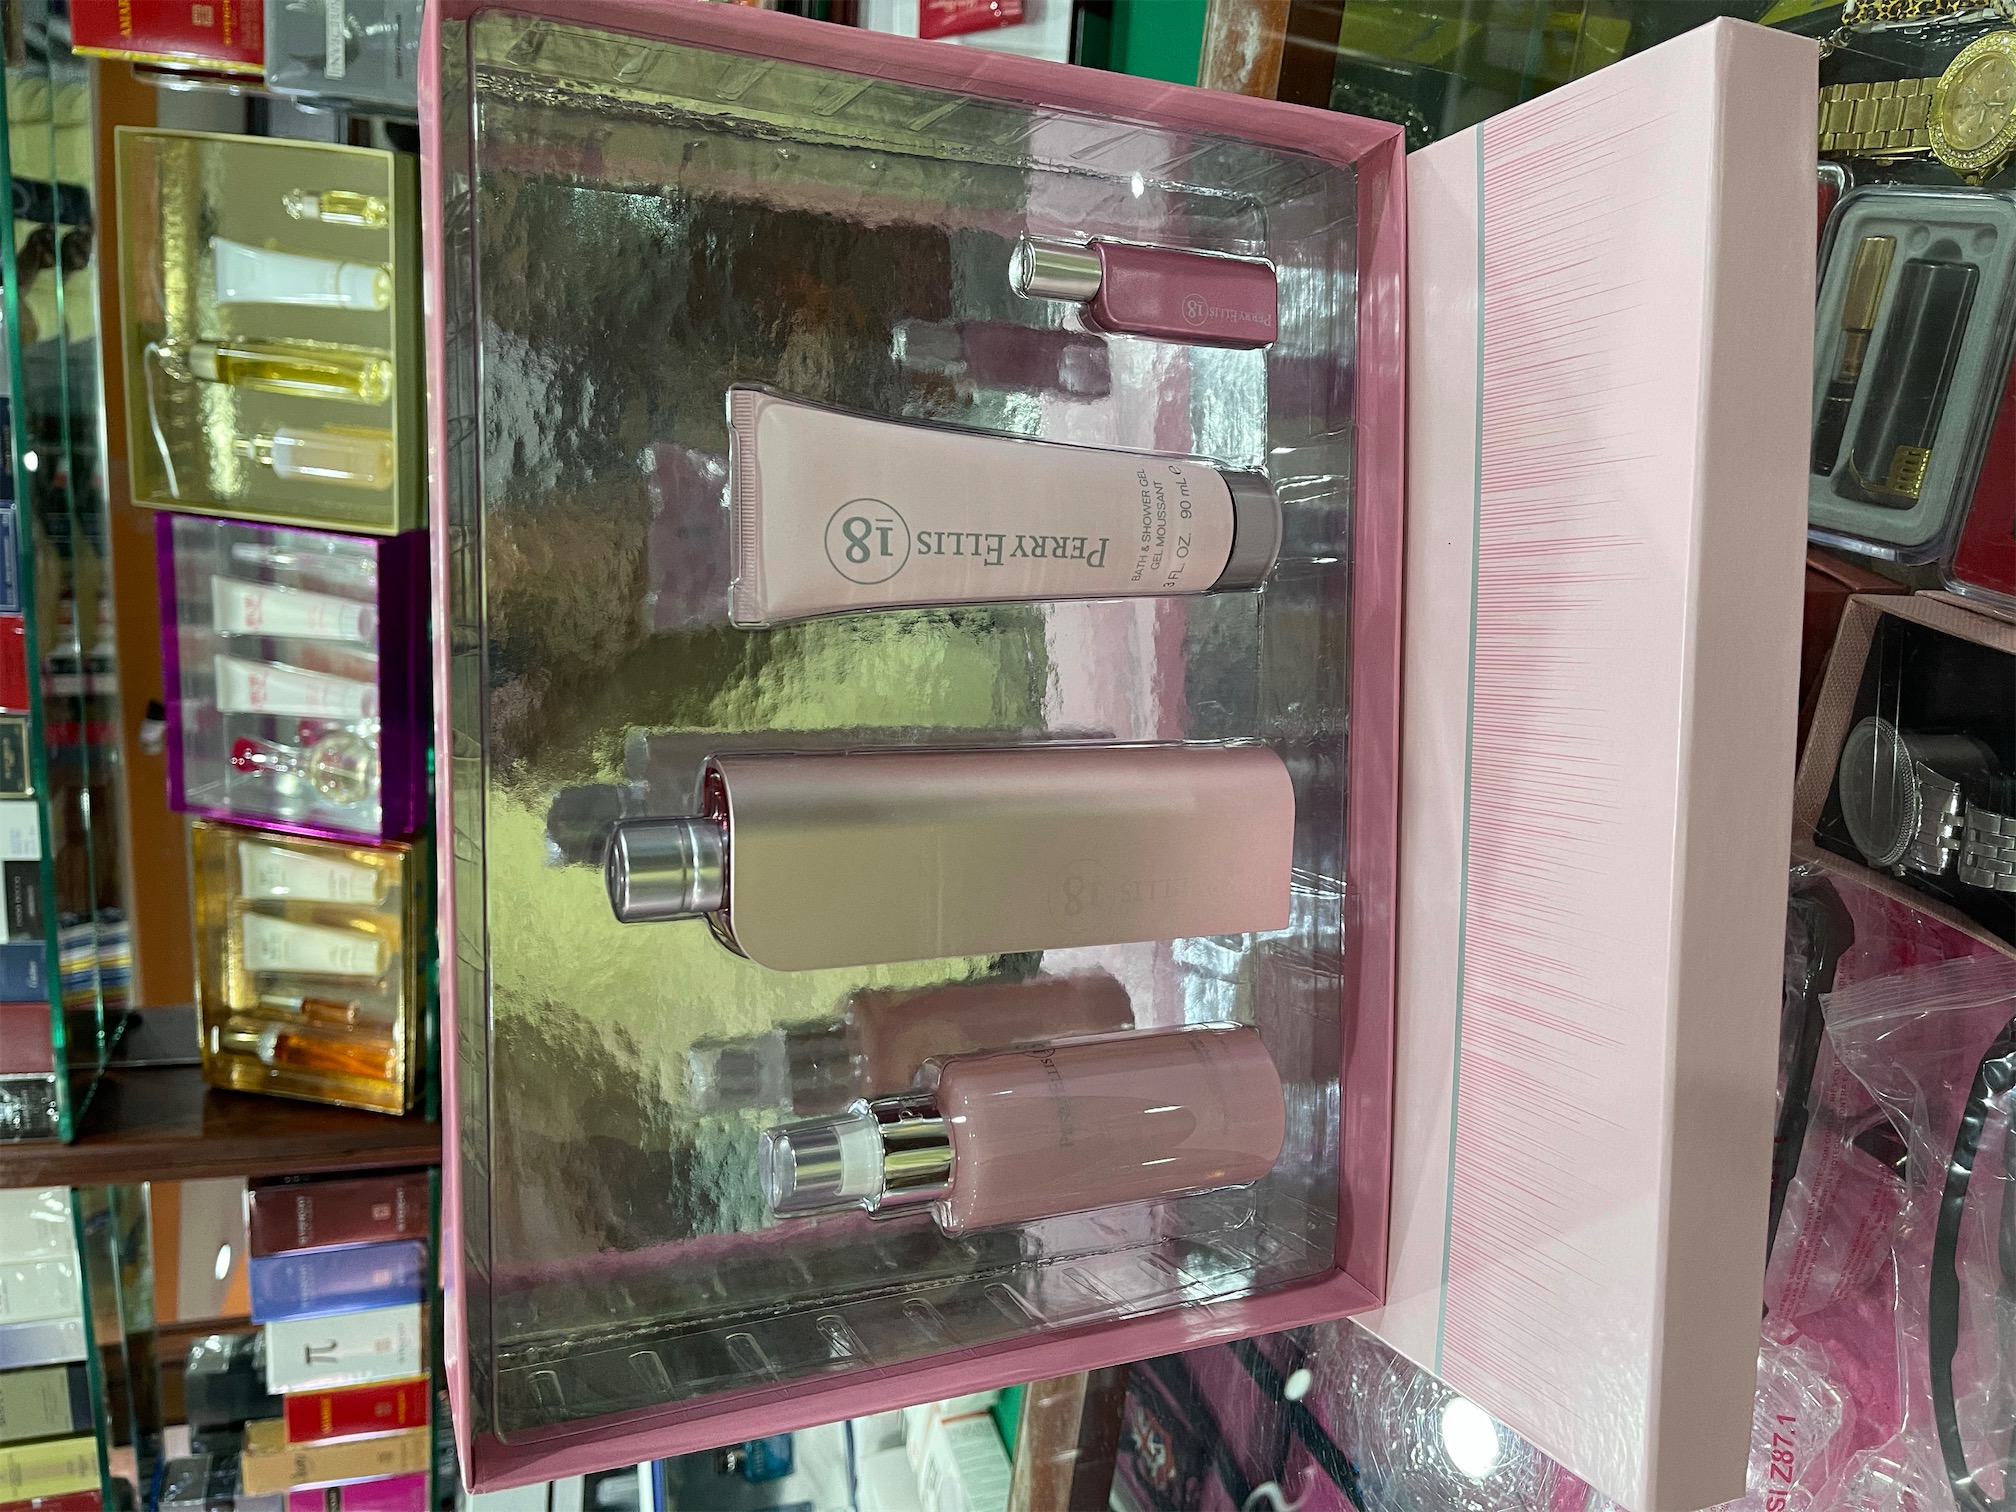 salud y belleza - Set perfume Perry Elli 18 ORIGINAL. AL POR MAYOR Y AL DETALLE 0